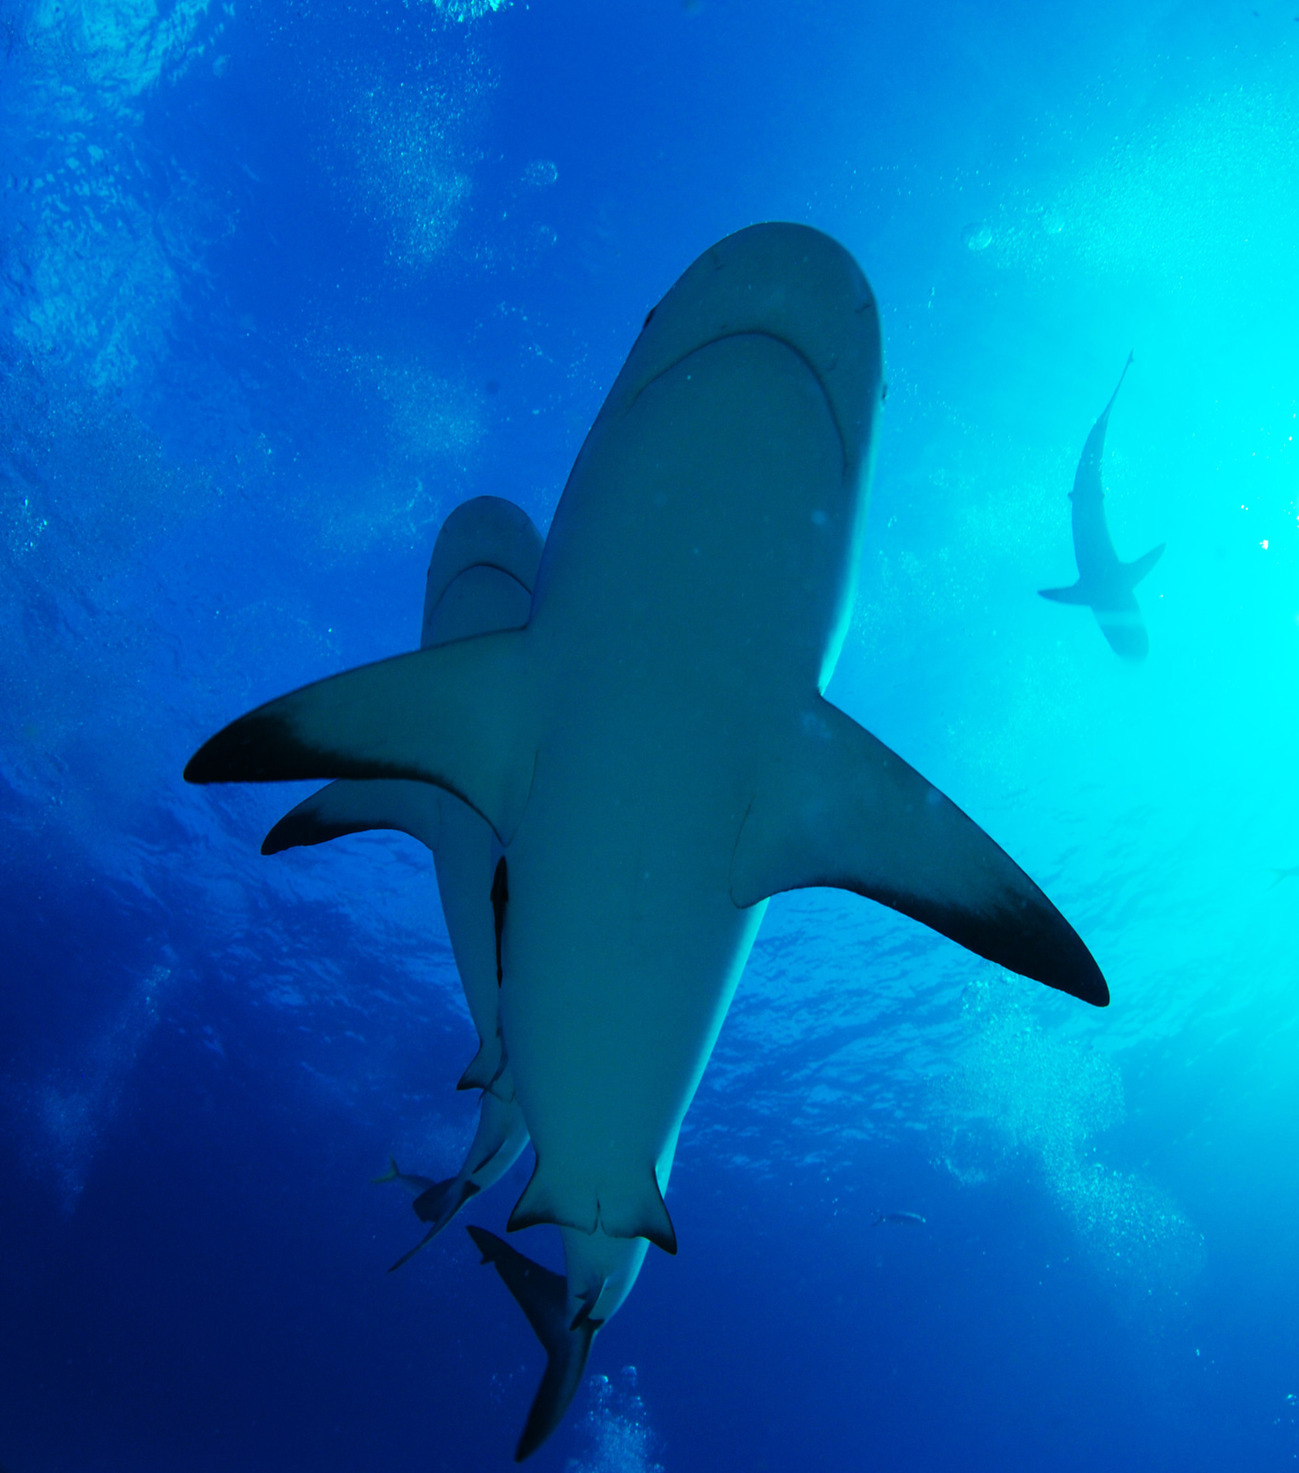 Shark, pansi pomwe. Chithunzi chikutengedwa kudera la Bahamas